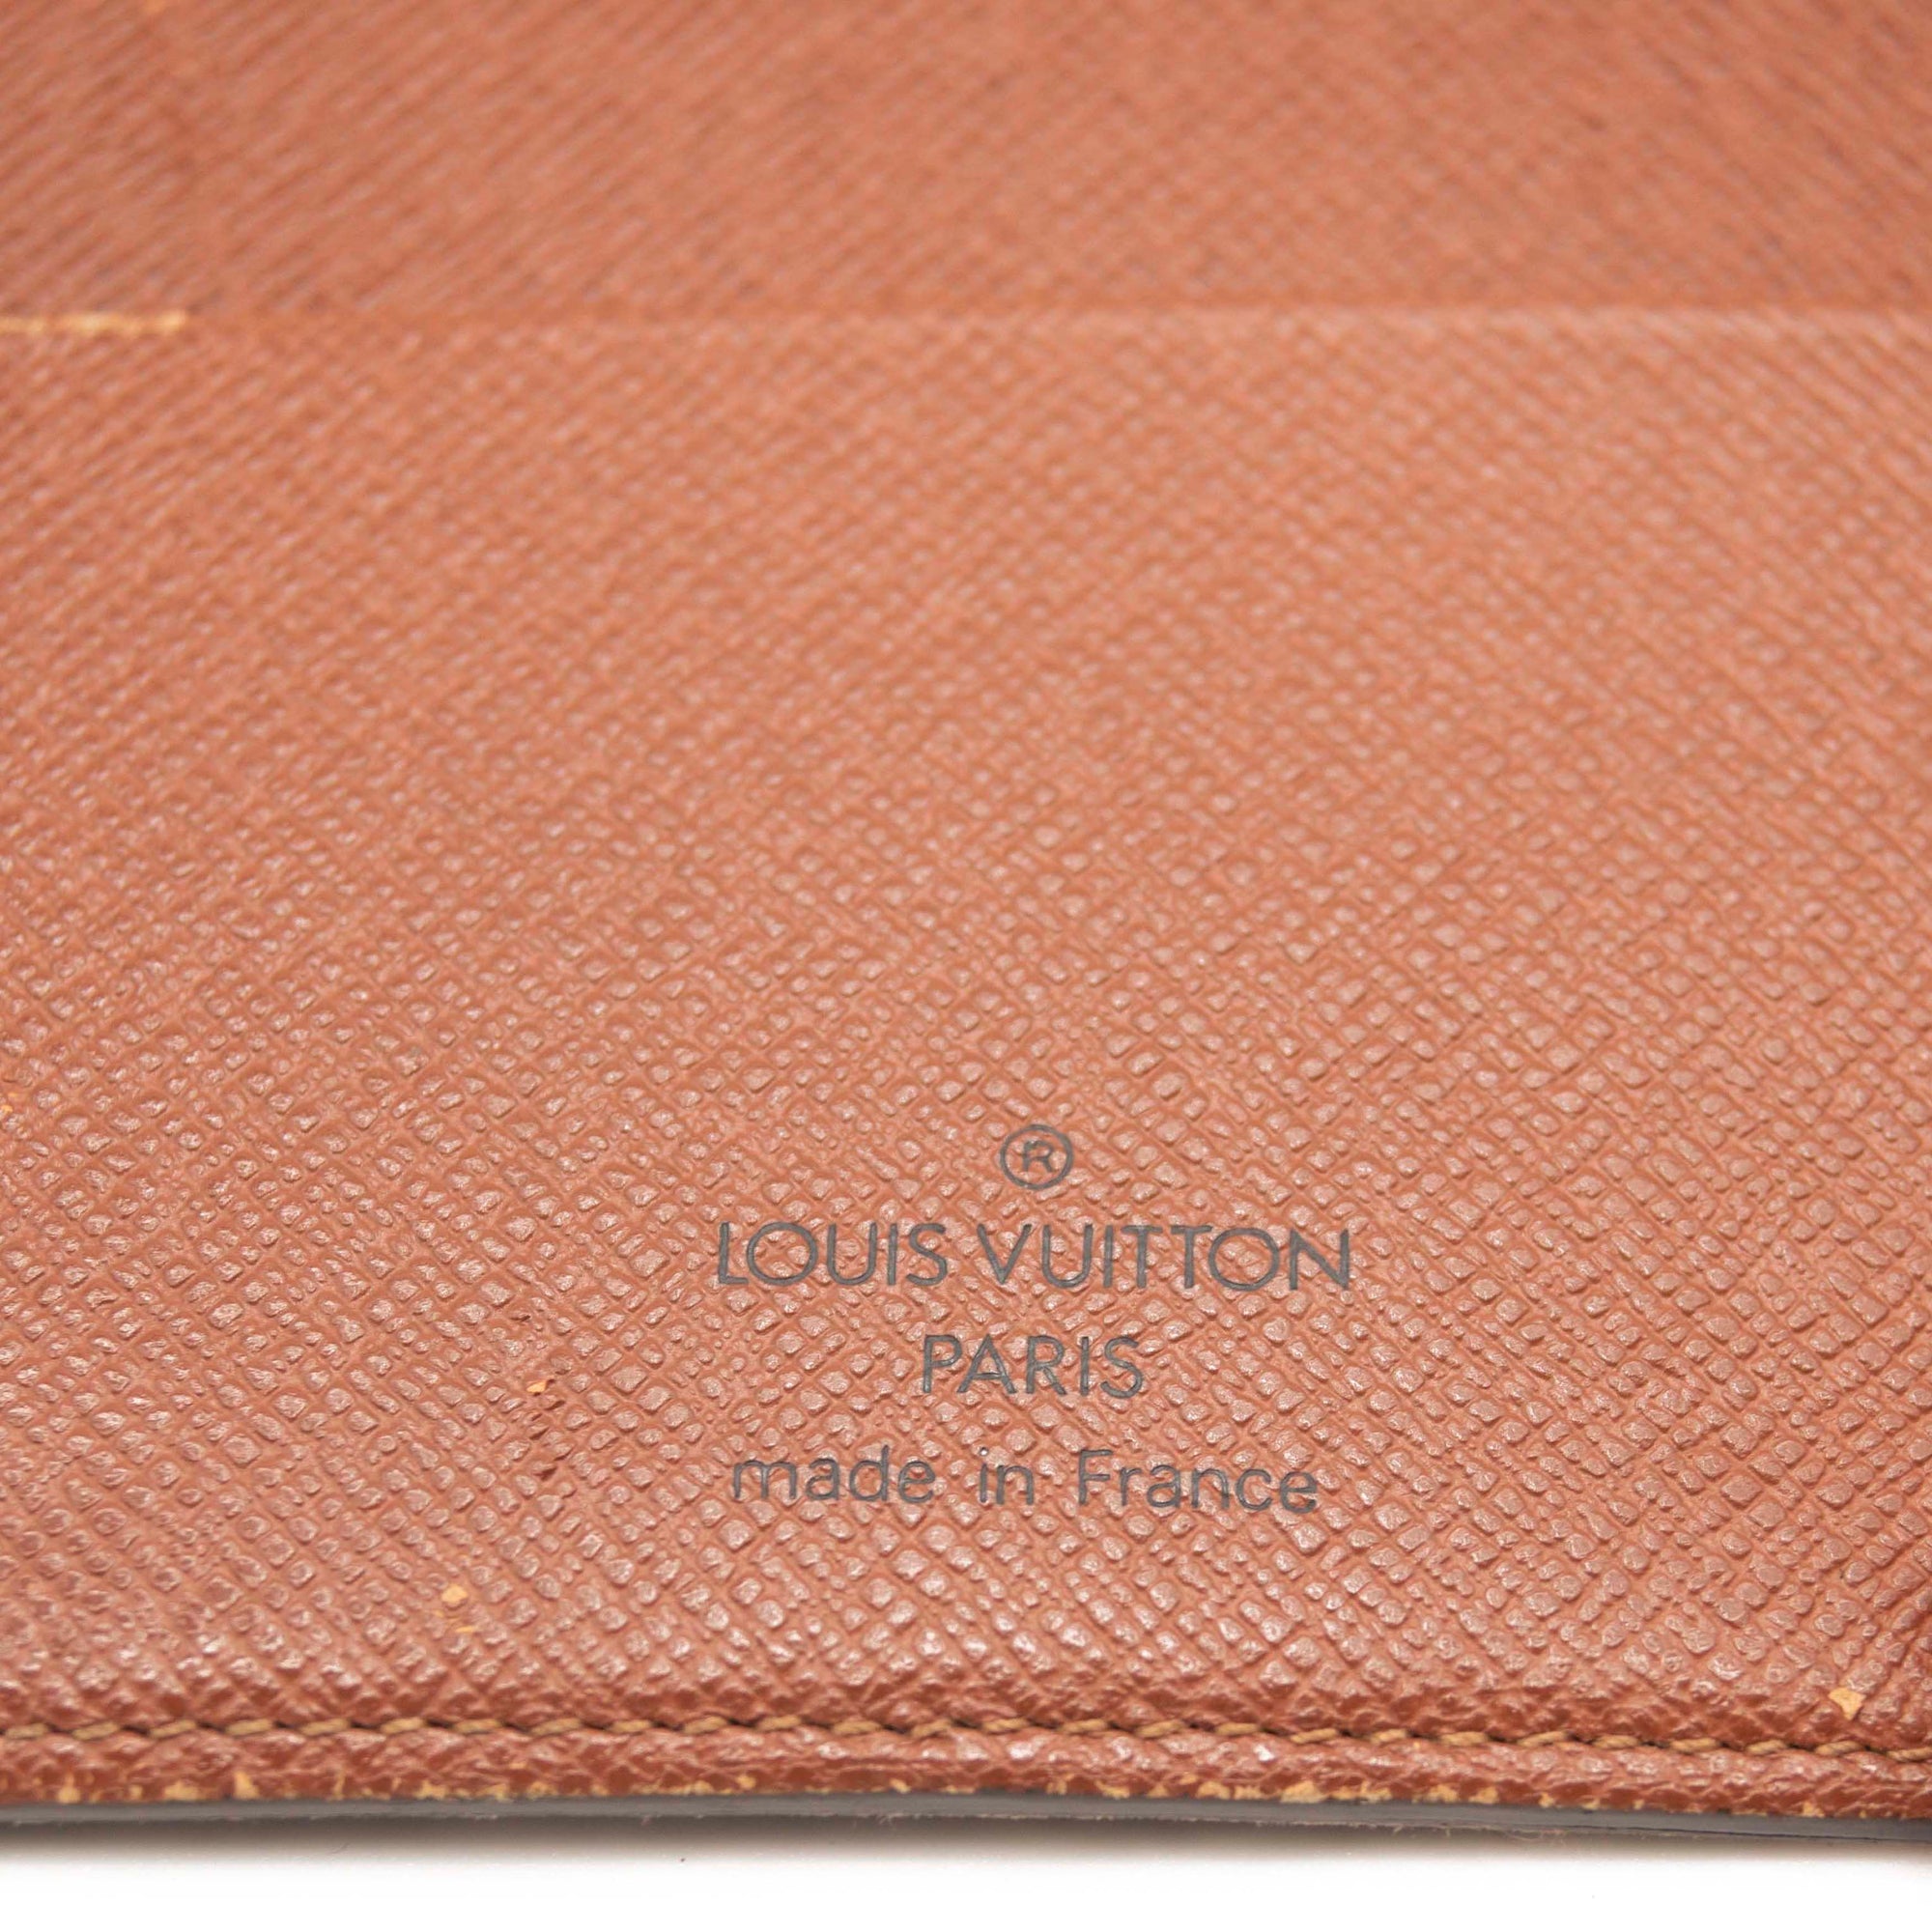 Louis Vuitton Empreinte Monogram Giant Vanity PM Tourterelle - MyDesignerly